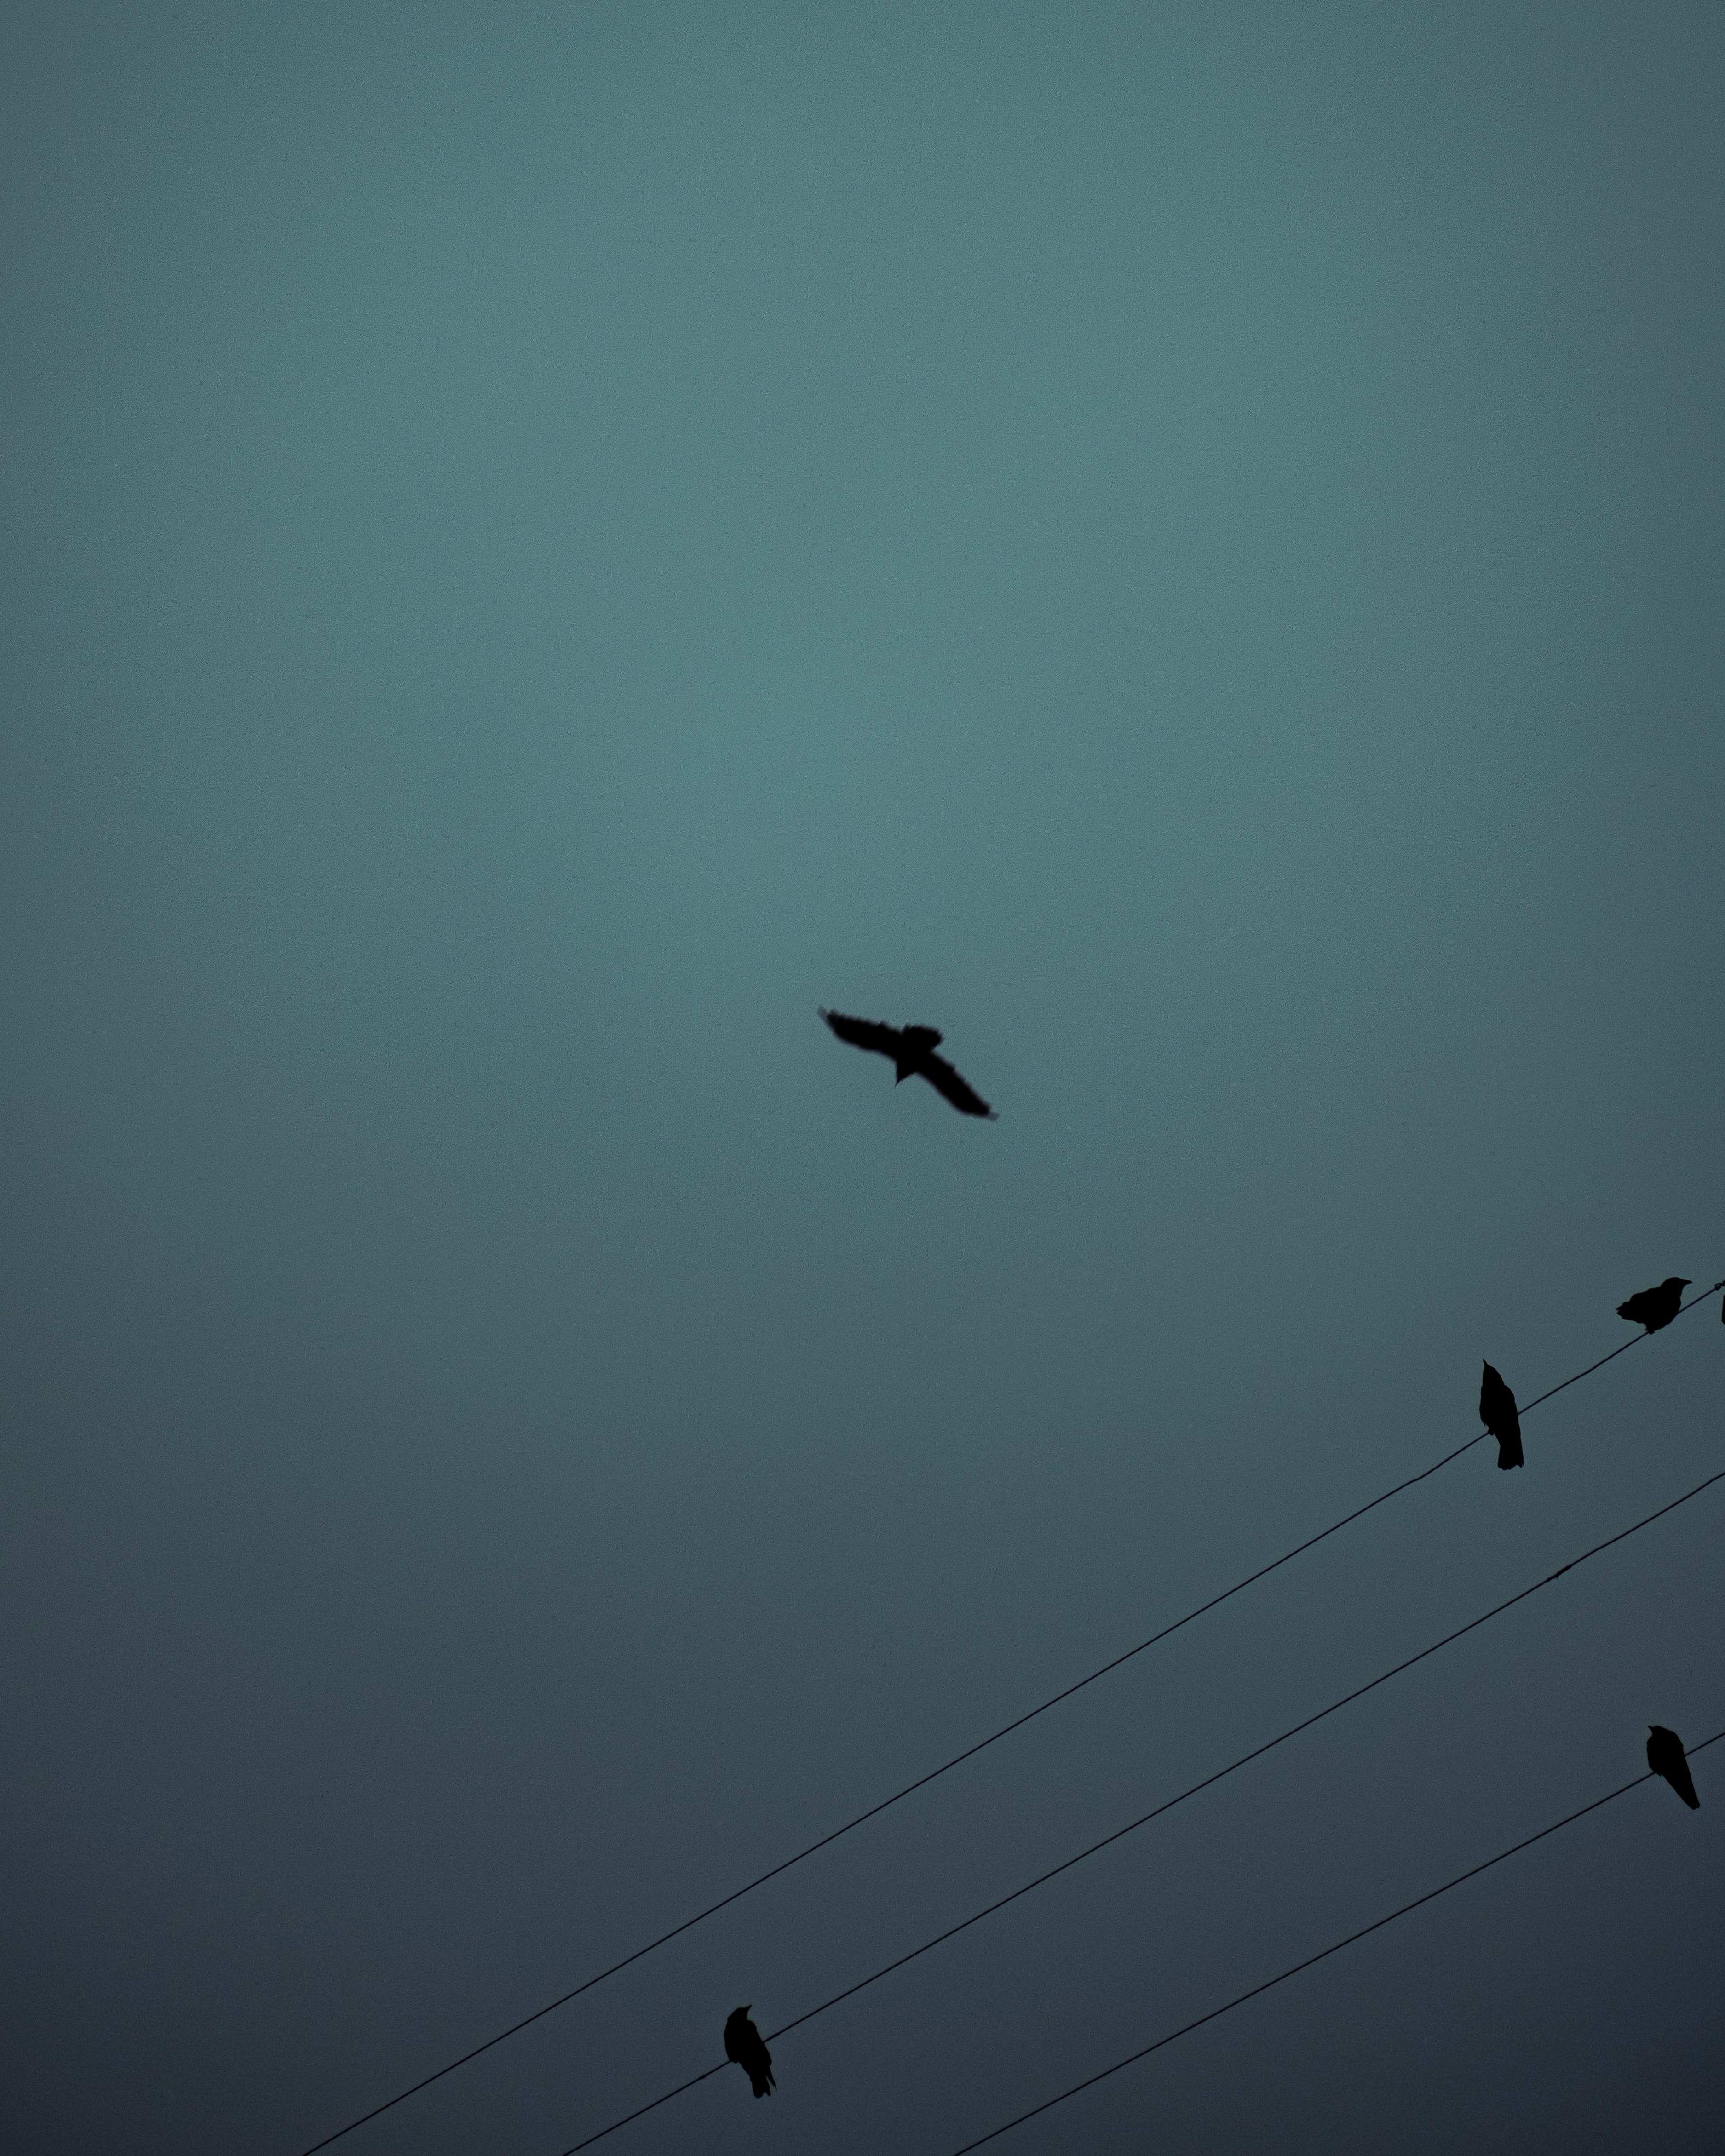 darkness, animals, birds, silhouette, flight, wires, wire